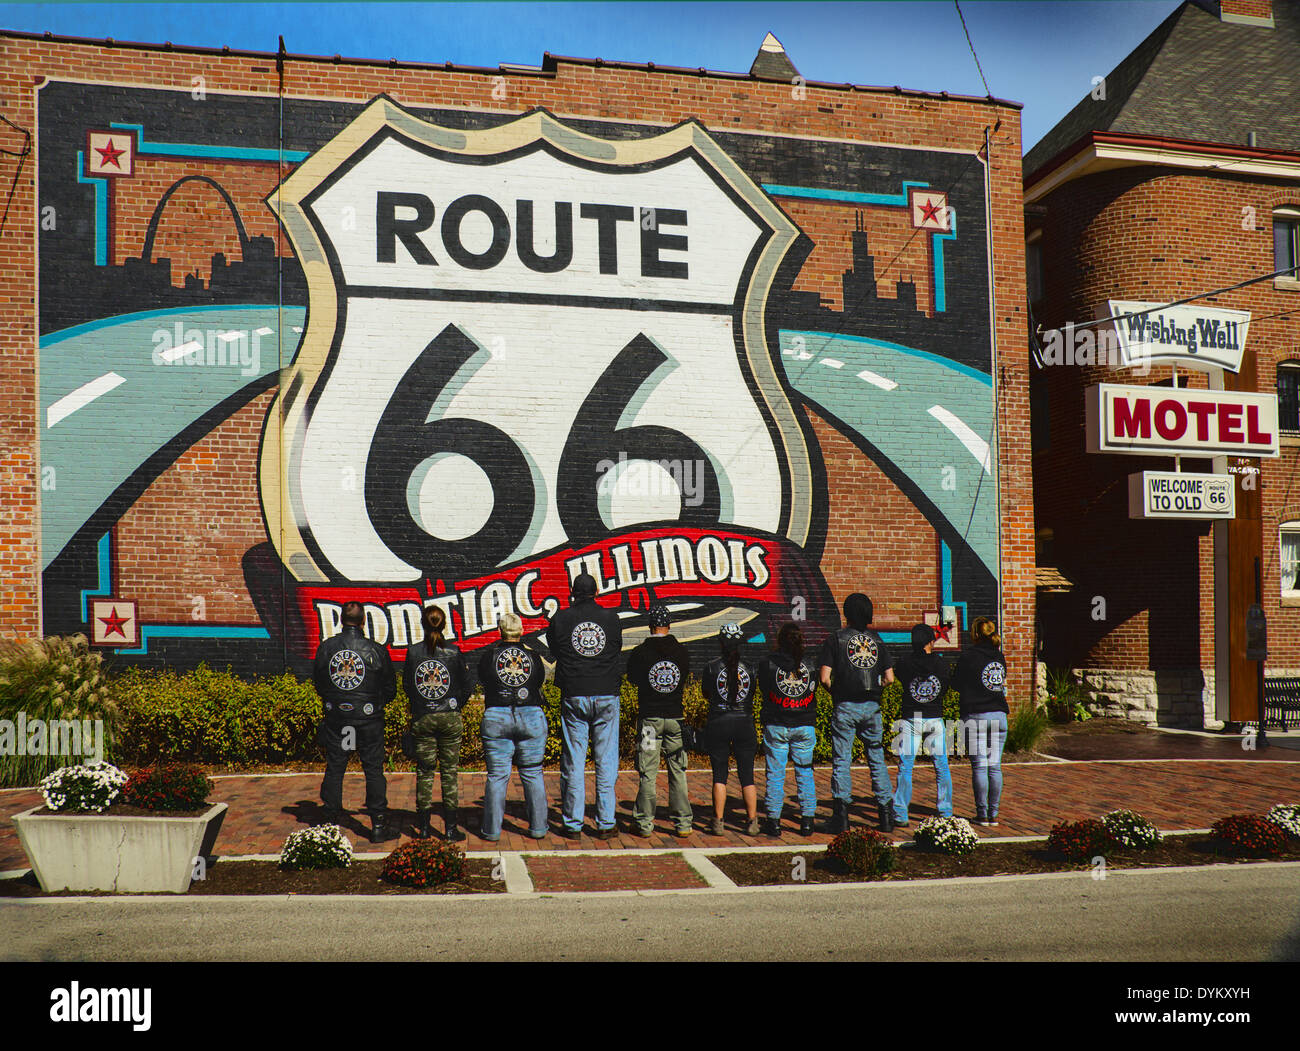 Los coyotes Málaga moto club viendo la Ruta 66 mural en Pontiac, Illinois, una ciudad a lo largo de la ruta 66. Foto de stock